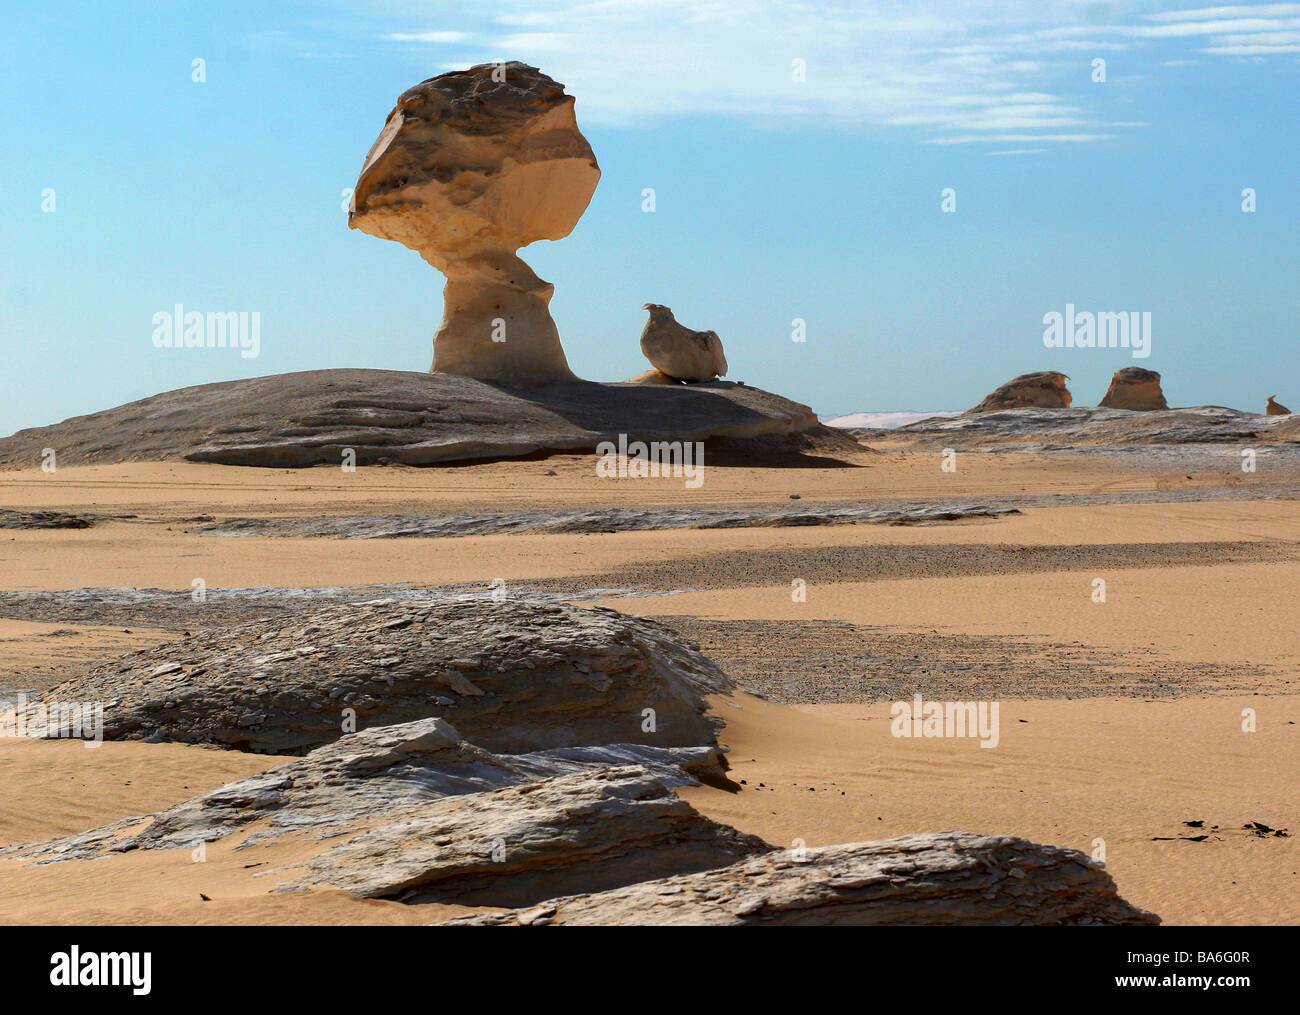 Ägypten-Libysche Wüste Felsformationen Natur Leben-negativ Vegetation locker Hitze Trockenheit staubigen sandigen Menschen leer weiß Stockfoto